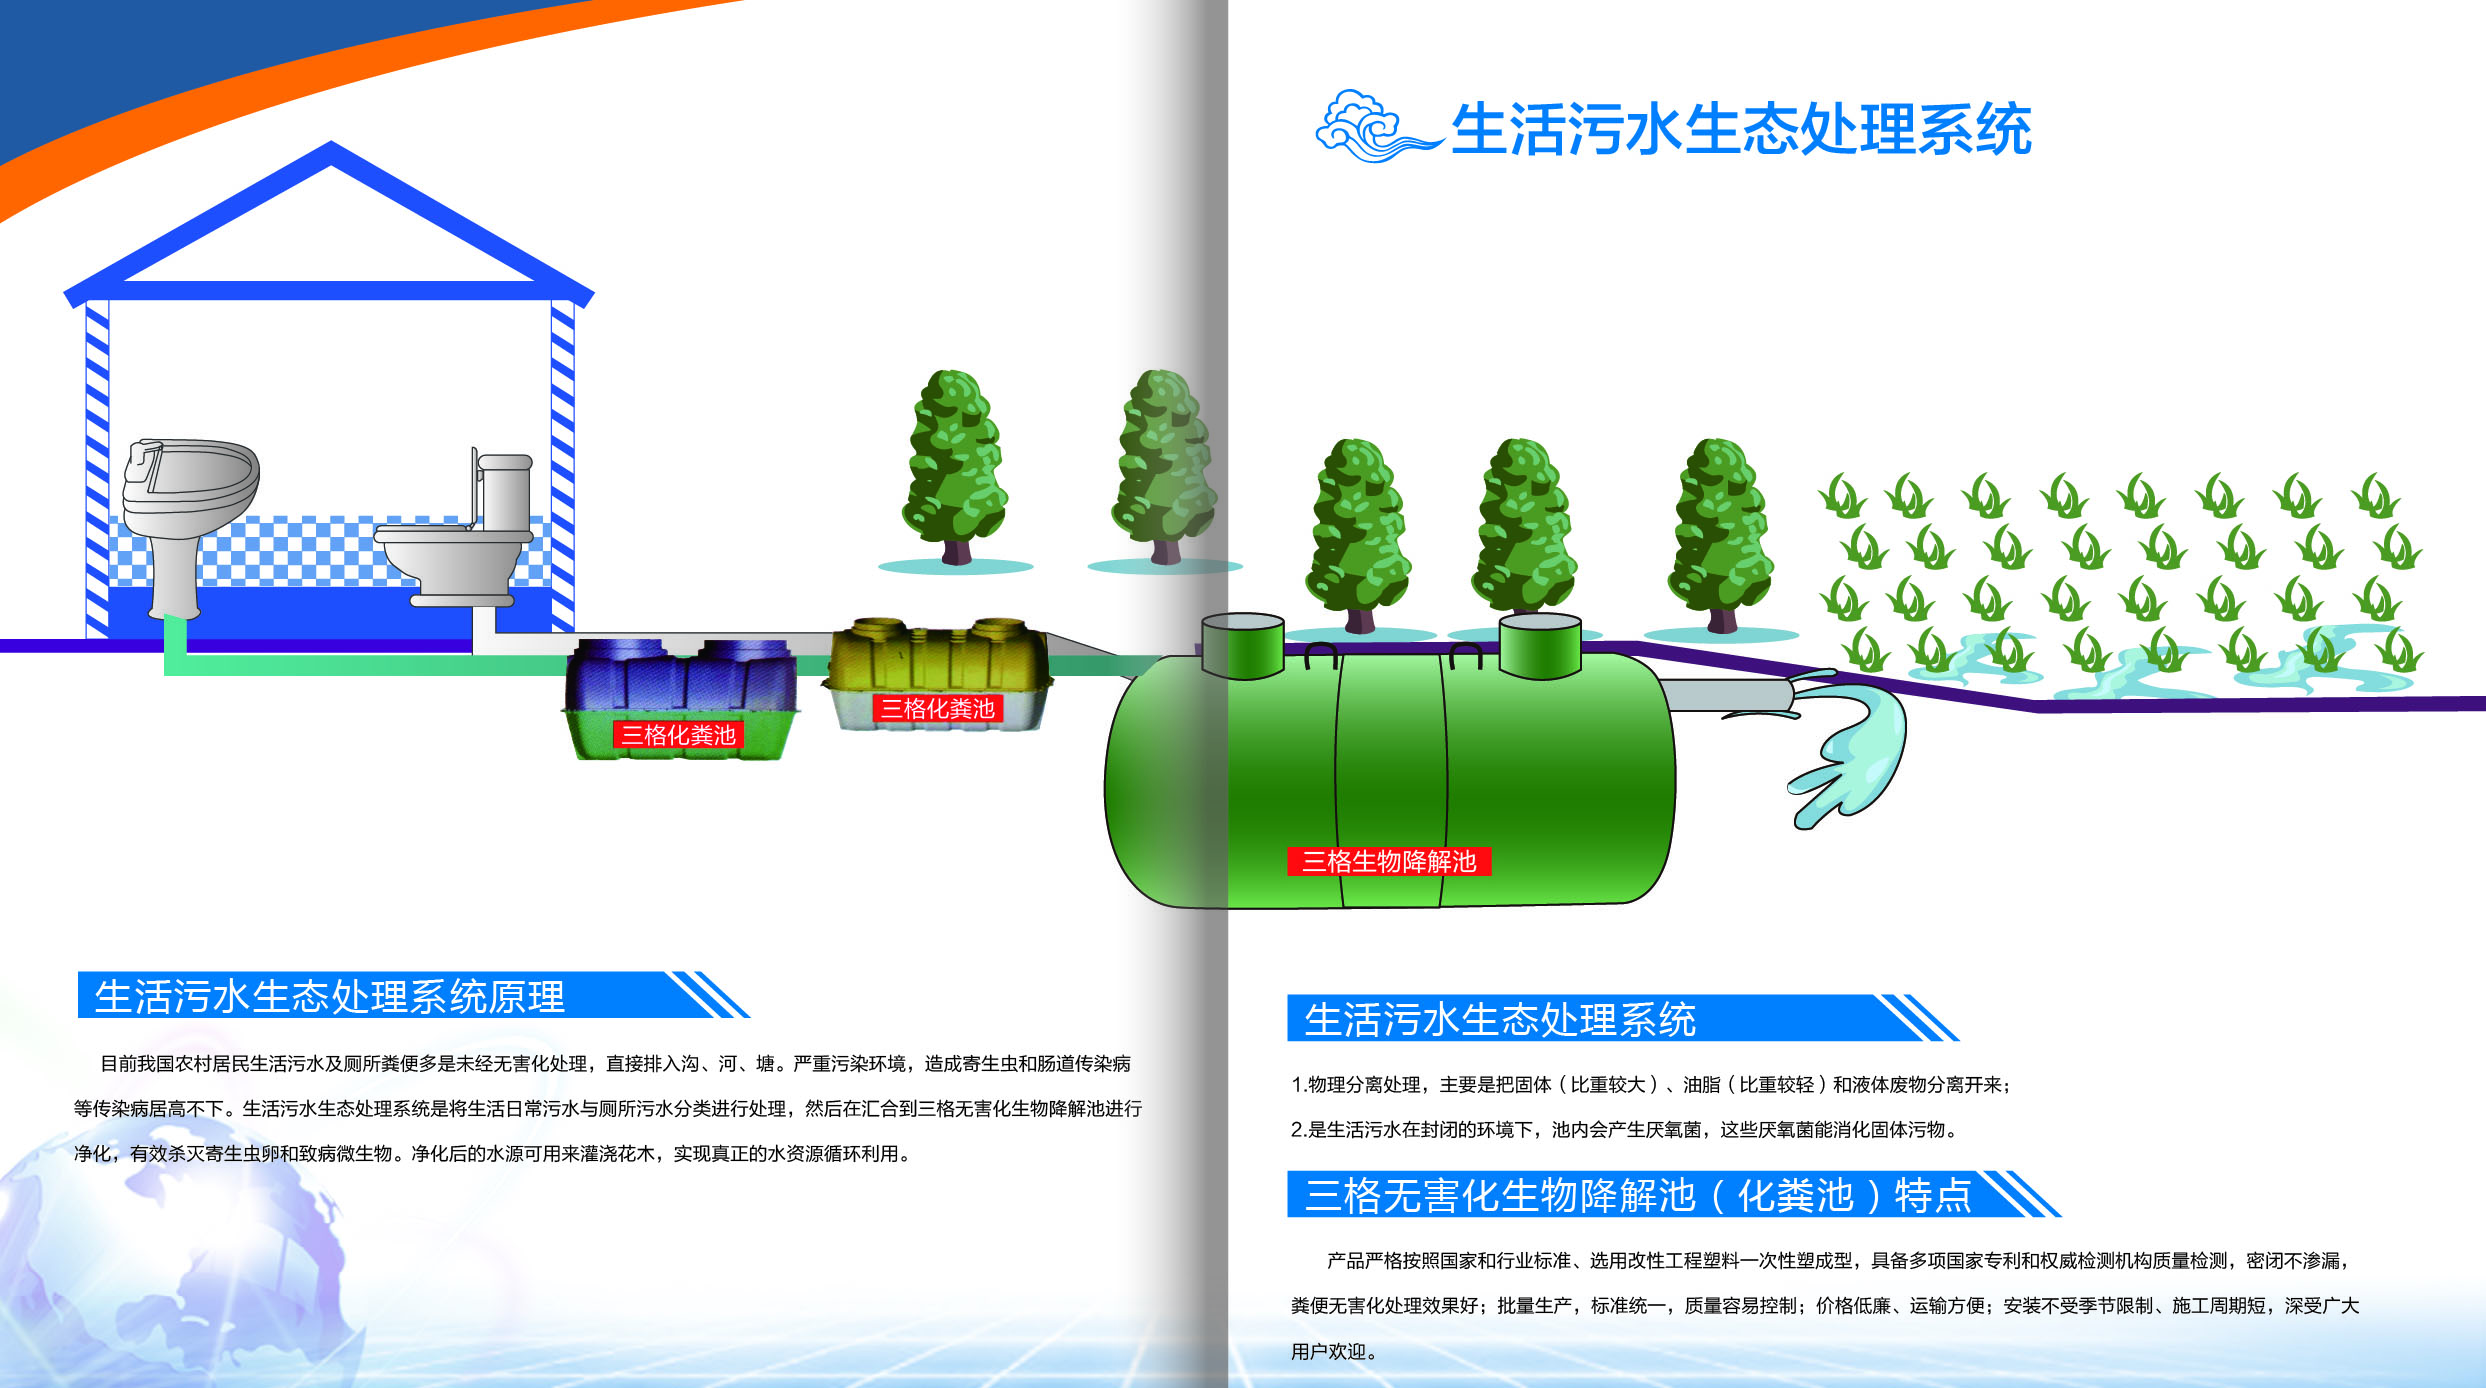 生活污水生态处理系统.jpg